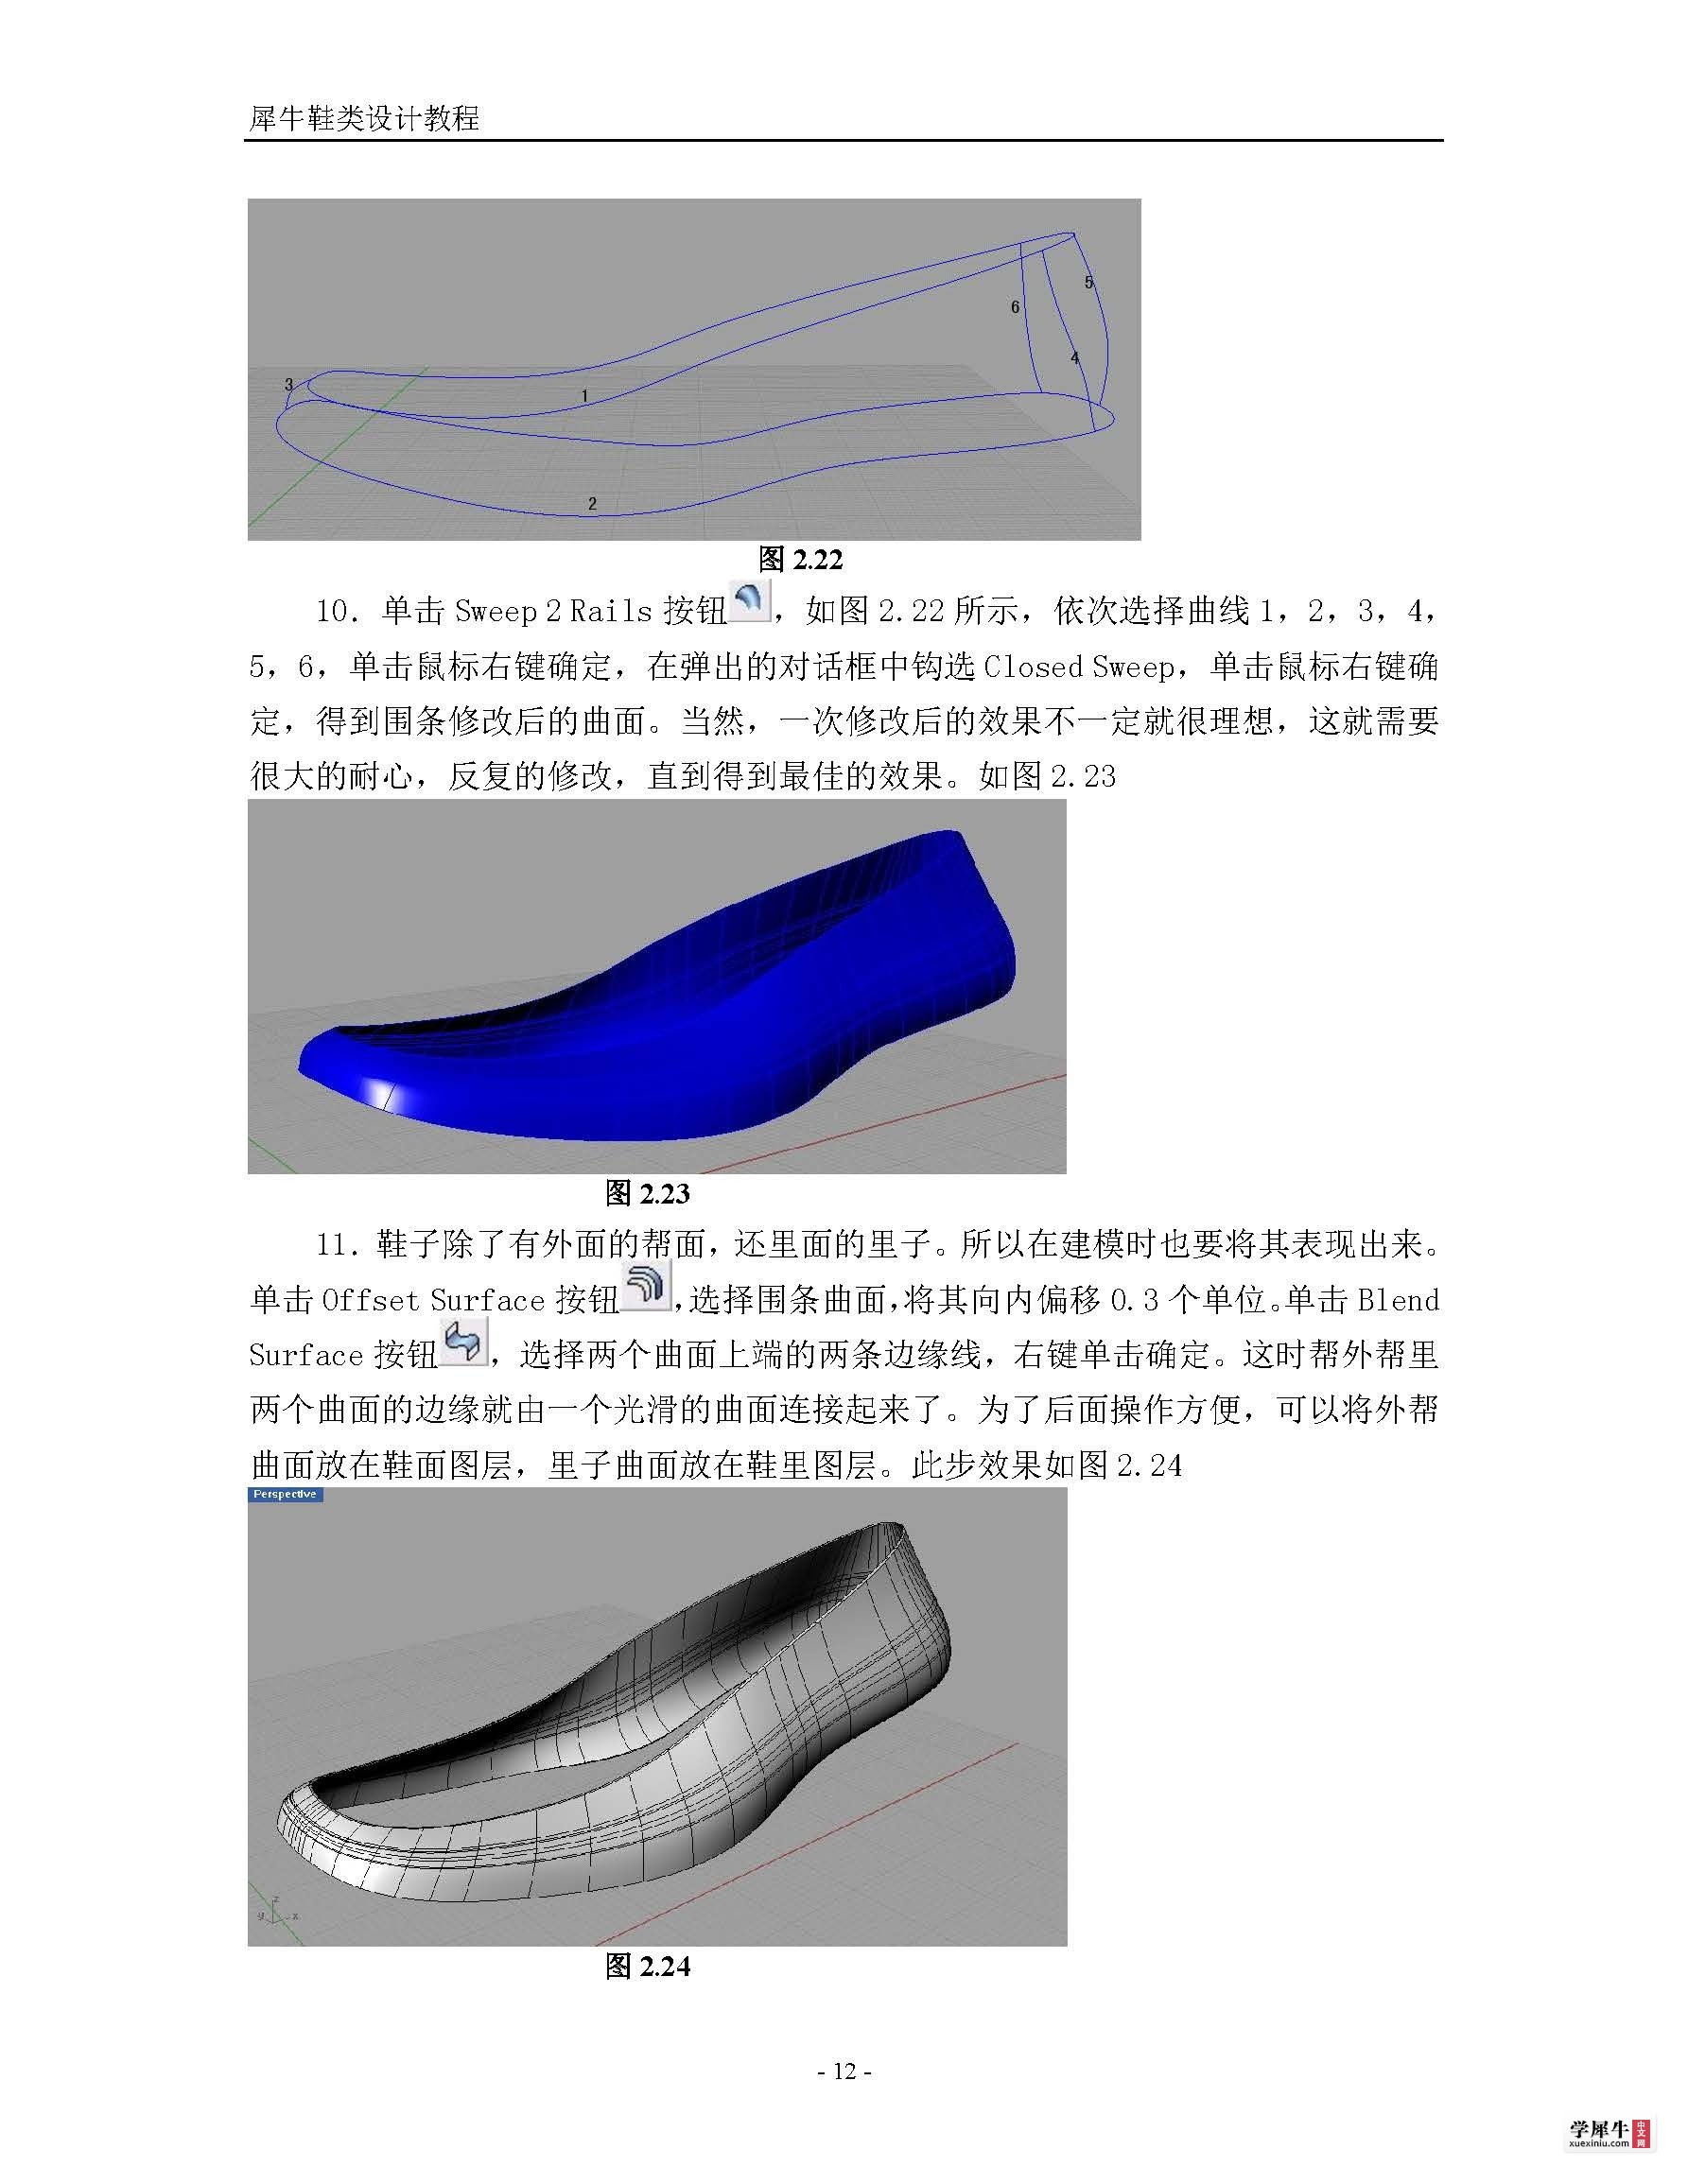 犀牛鞋类建模终极教程(转)_页面_12.jpg